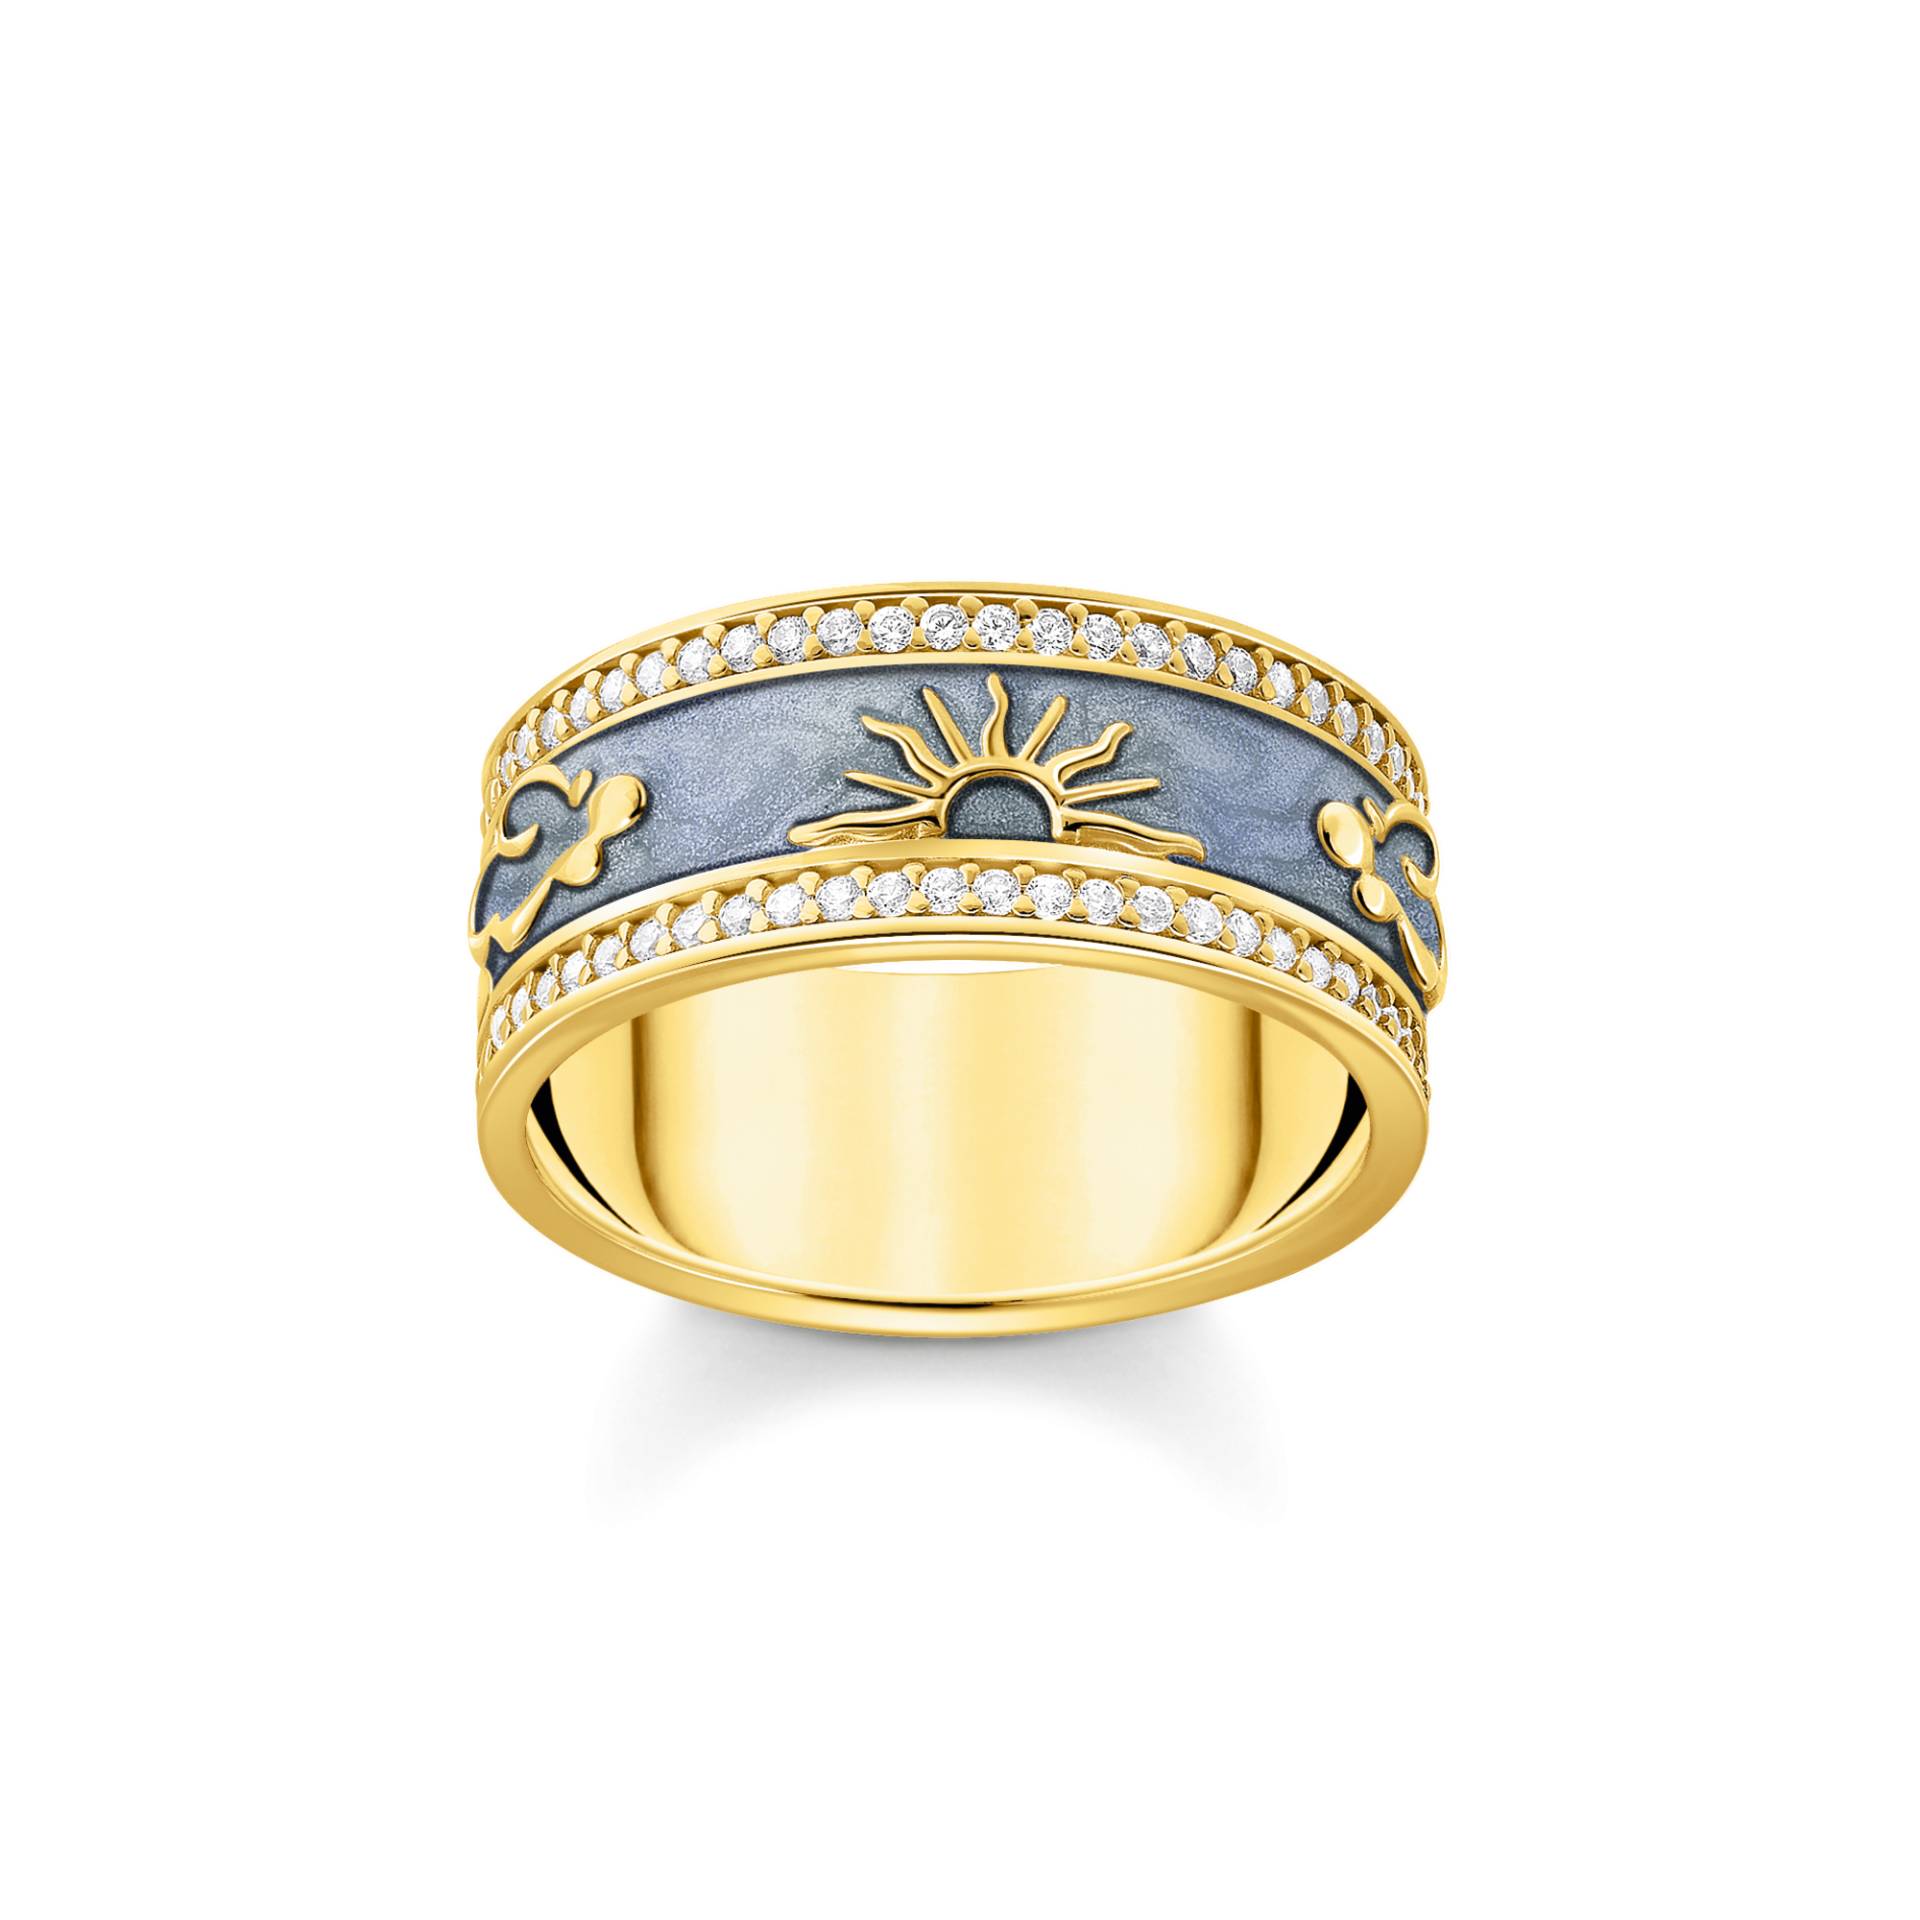 Thomas Sabo Ring blau mit kosmischen Symbolen vergoldet blau TR2450-565-1-54 von Thomas Sabo